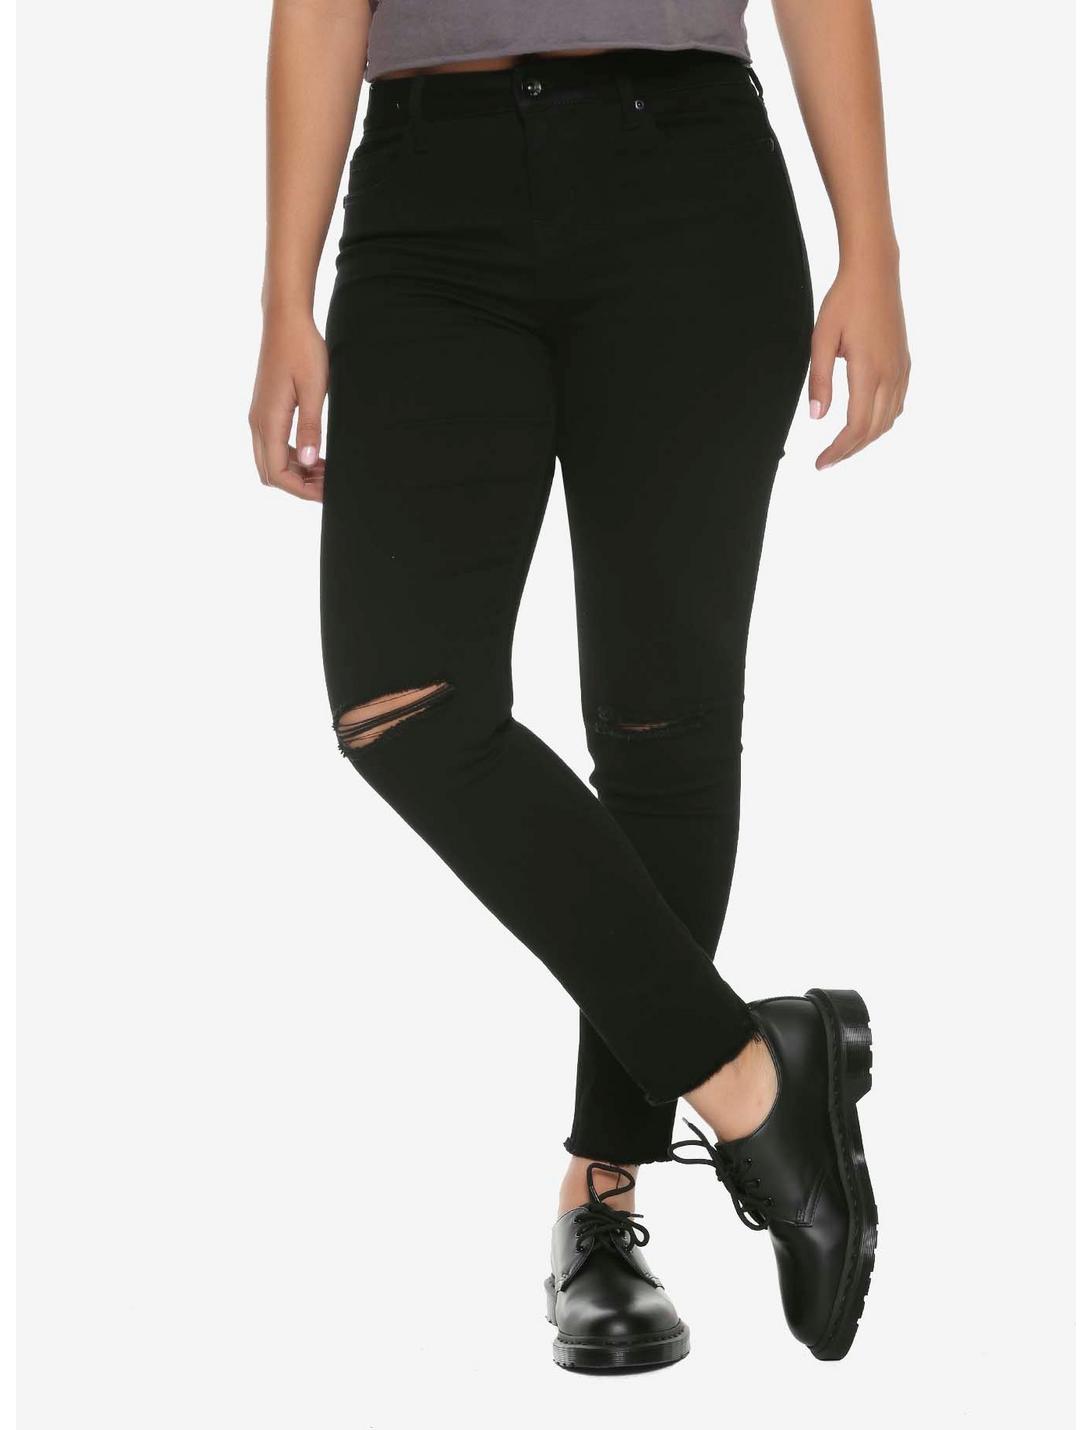 HT Denim Black Knee Slits Low-Rise Skinny Jeans, BLACK, hi-res